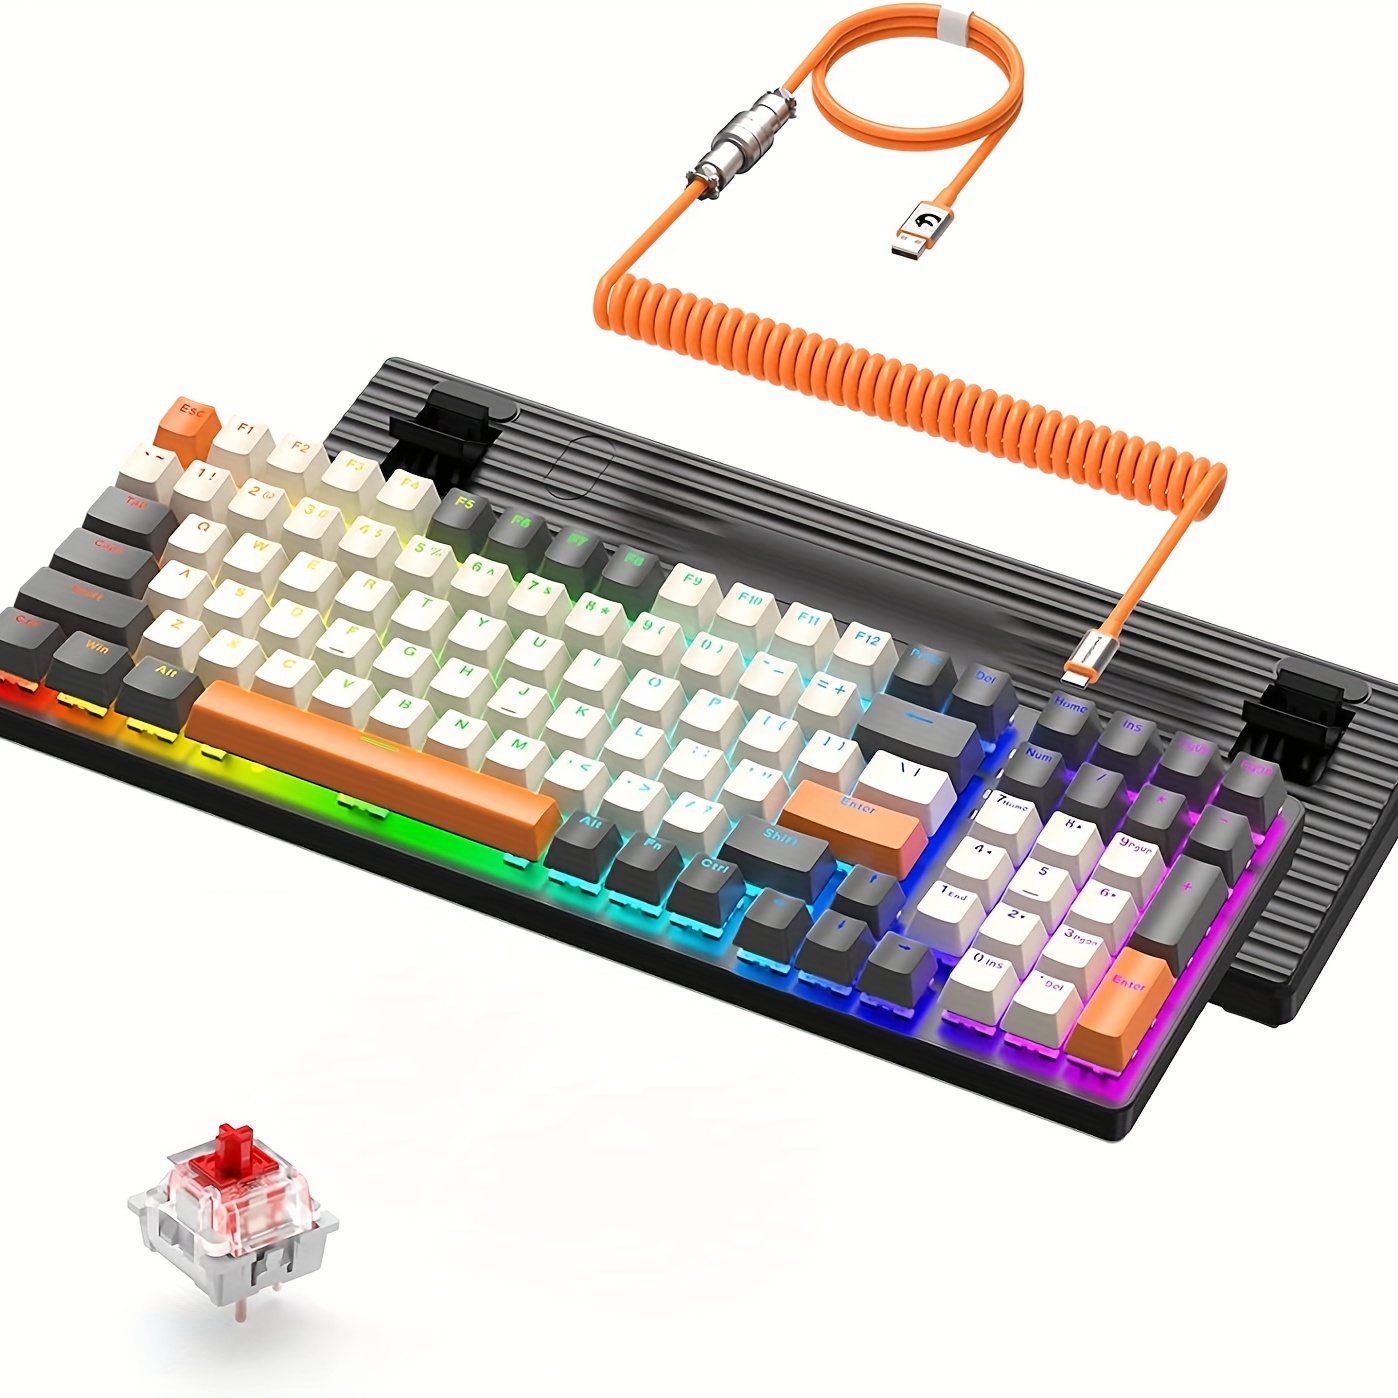 Nuevo teclado mecánico 60%, teclado para juegos con cable retroiluminado  LED RGB, ergonómico, para PC/Mac Gamer, Typist